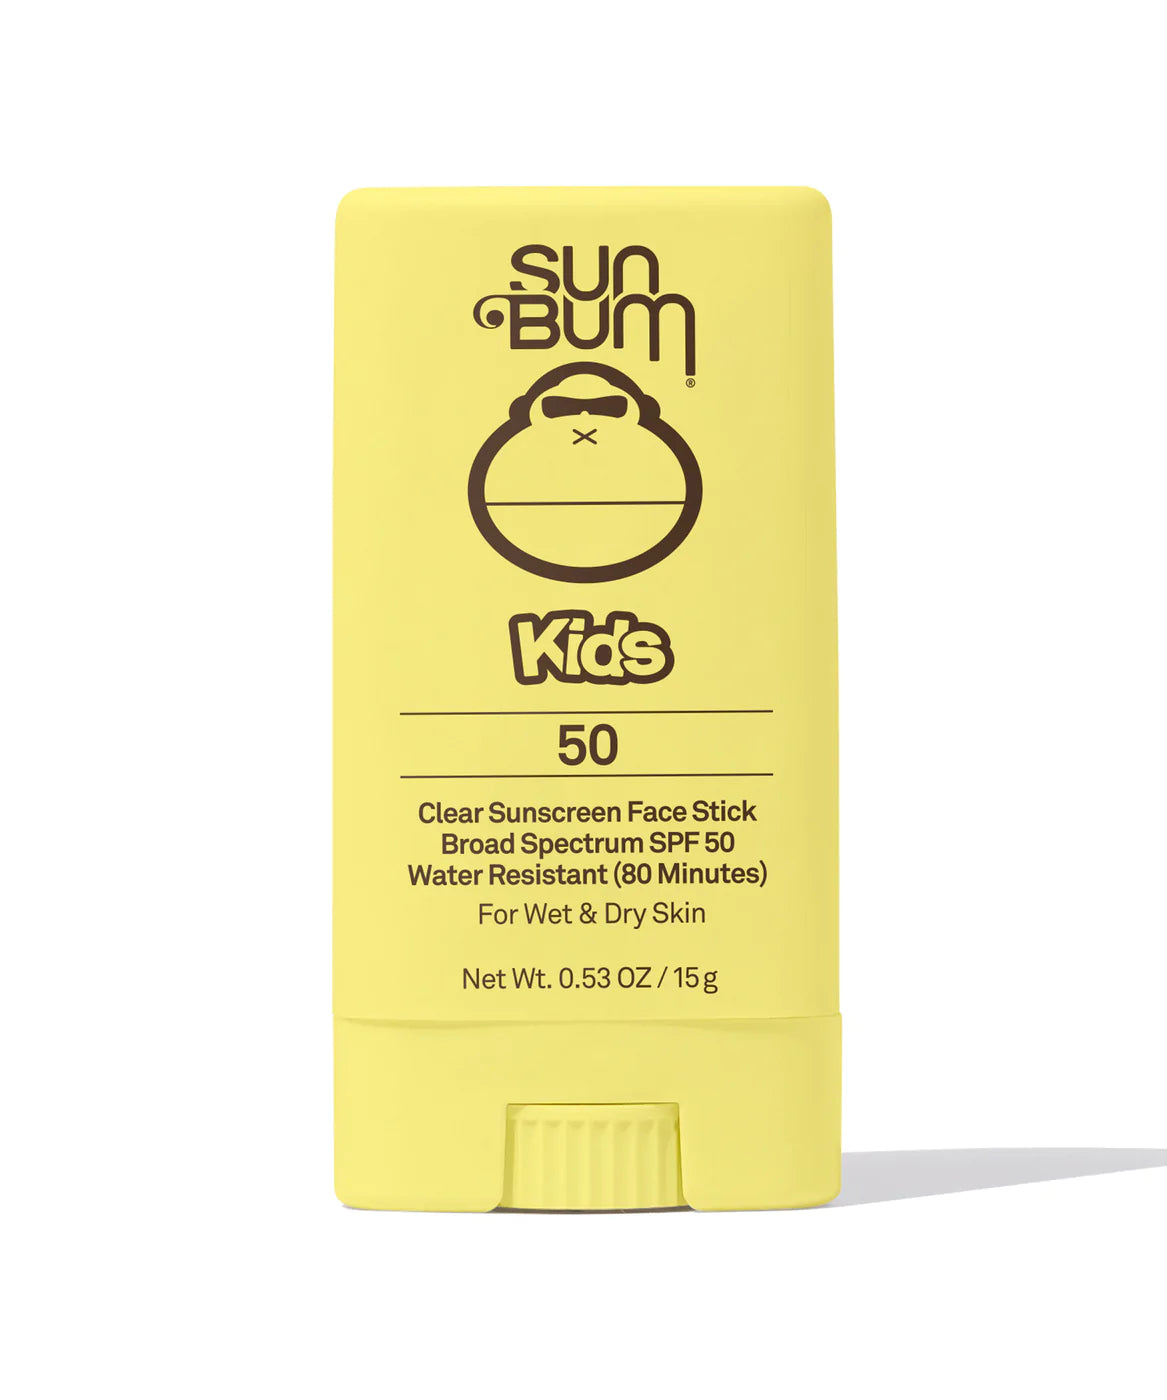 SUNBUM Kids SPF 50 Clear Sunscreen Face Stick Default SUN BUM 